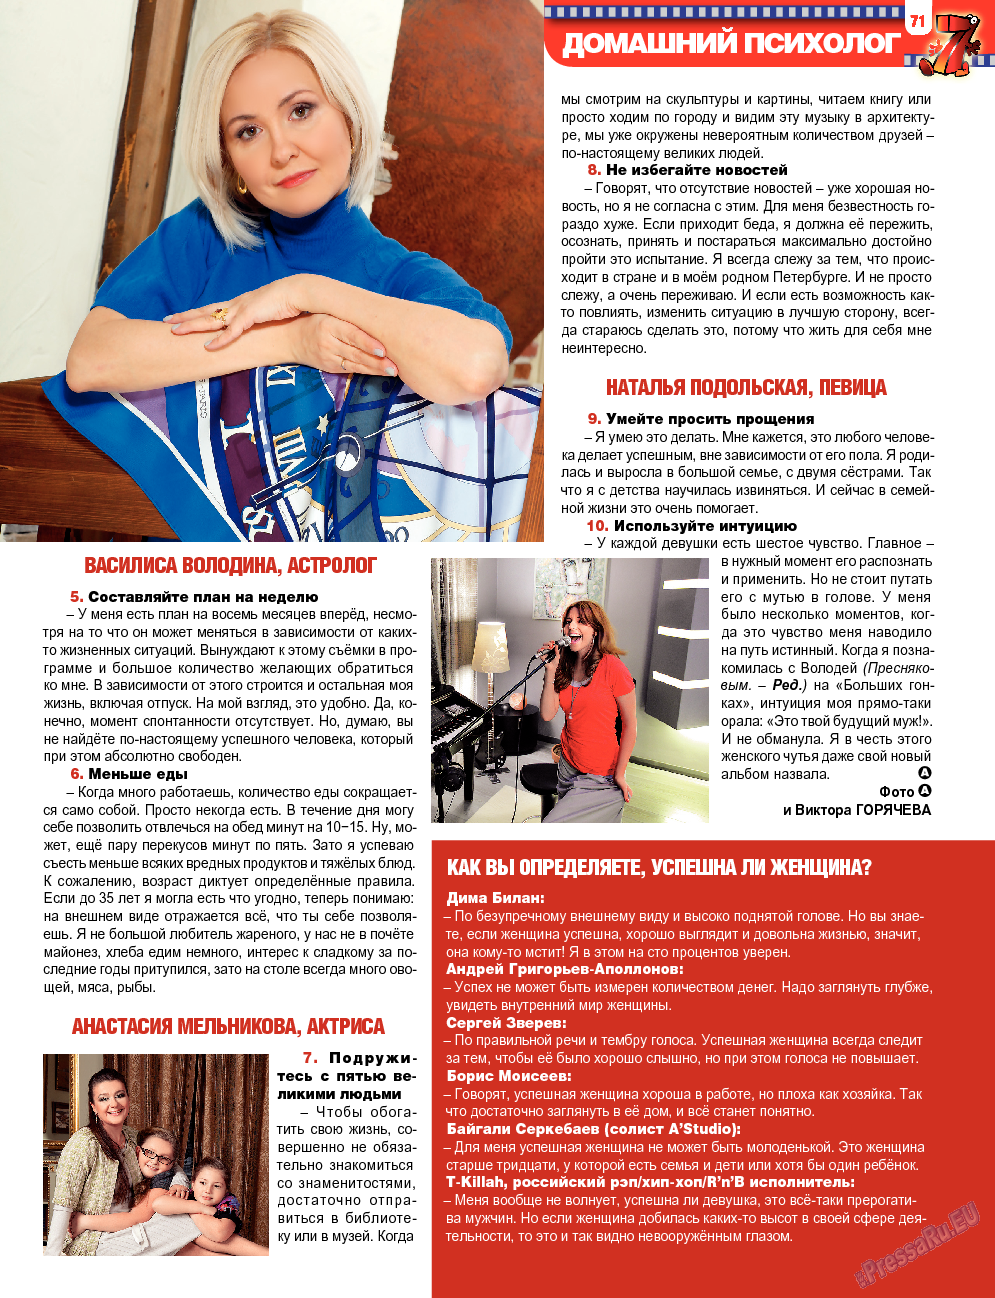 7плюс7я, журнал. 2013 №47 стр.71